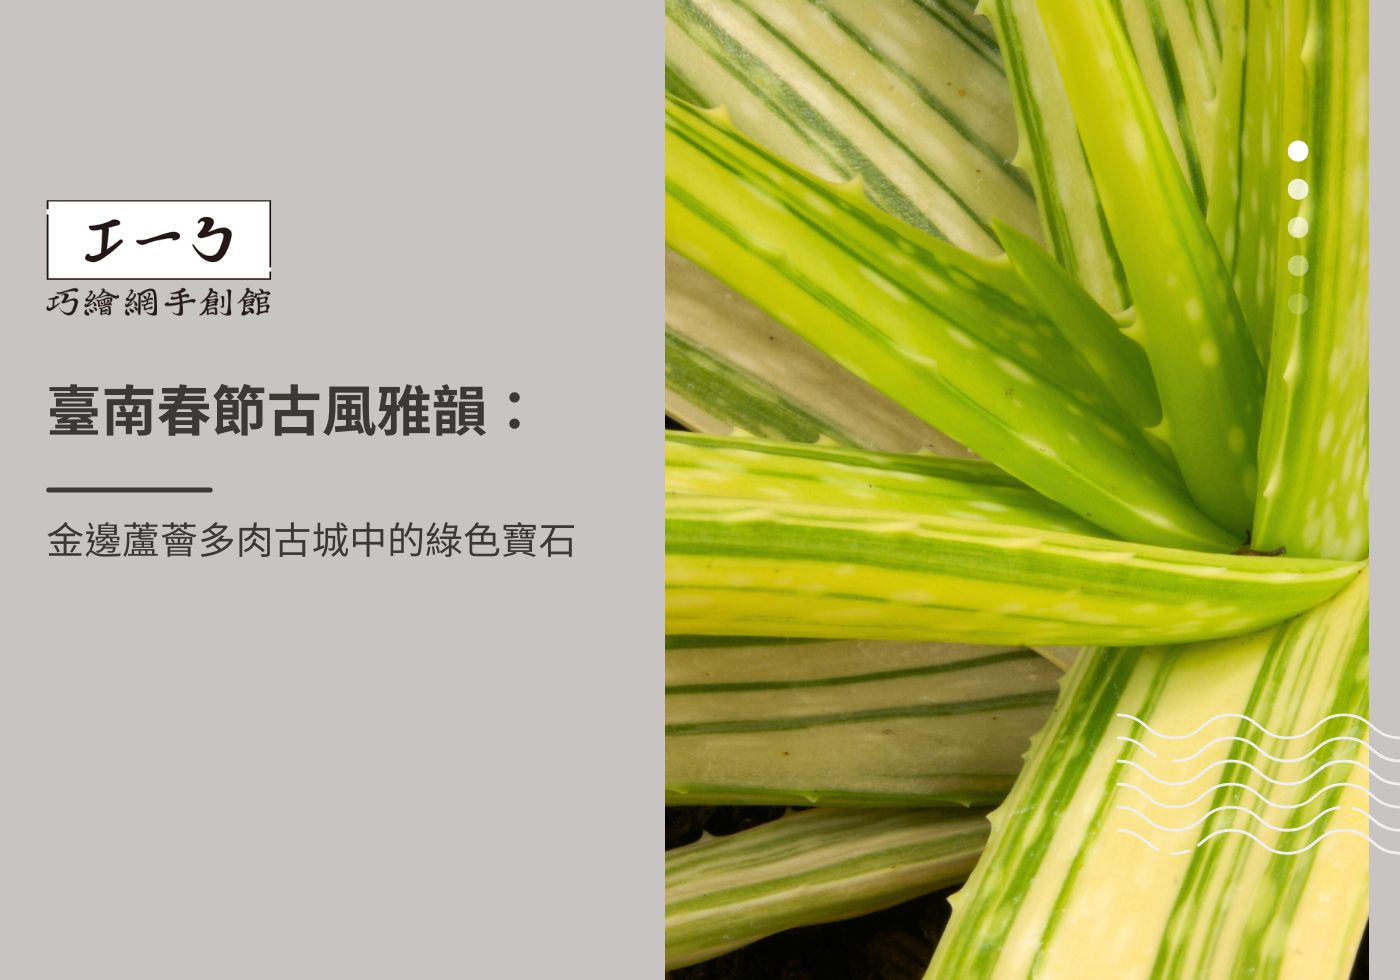 閱讀更多文章 臺南春節古風雅韻：金邊蘆薈多肉古城中的綠色寶石